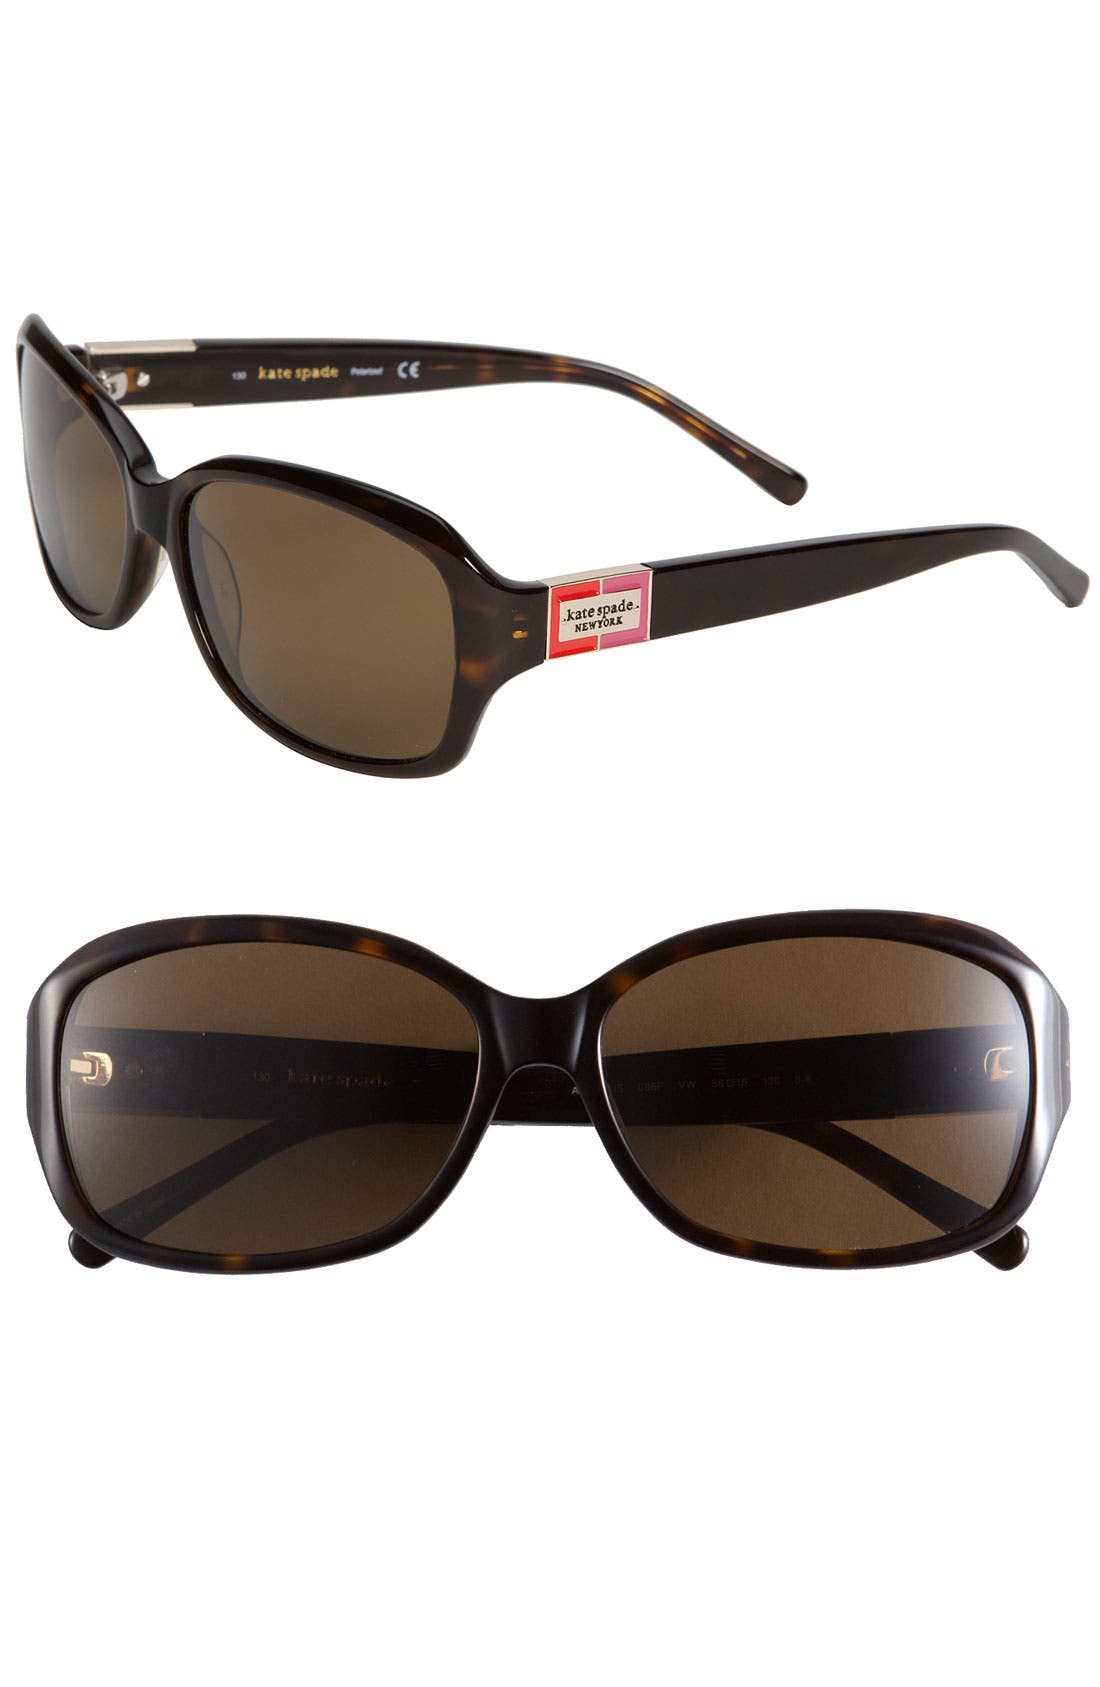 Kate Spade New York Sunglasses Deals, 60% OFF | www.gruposincom.es